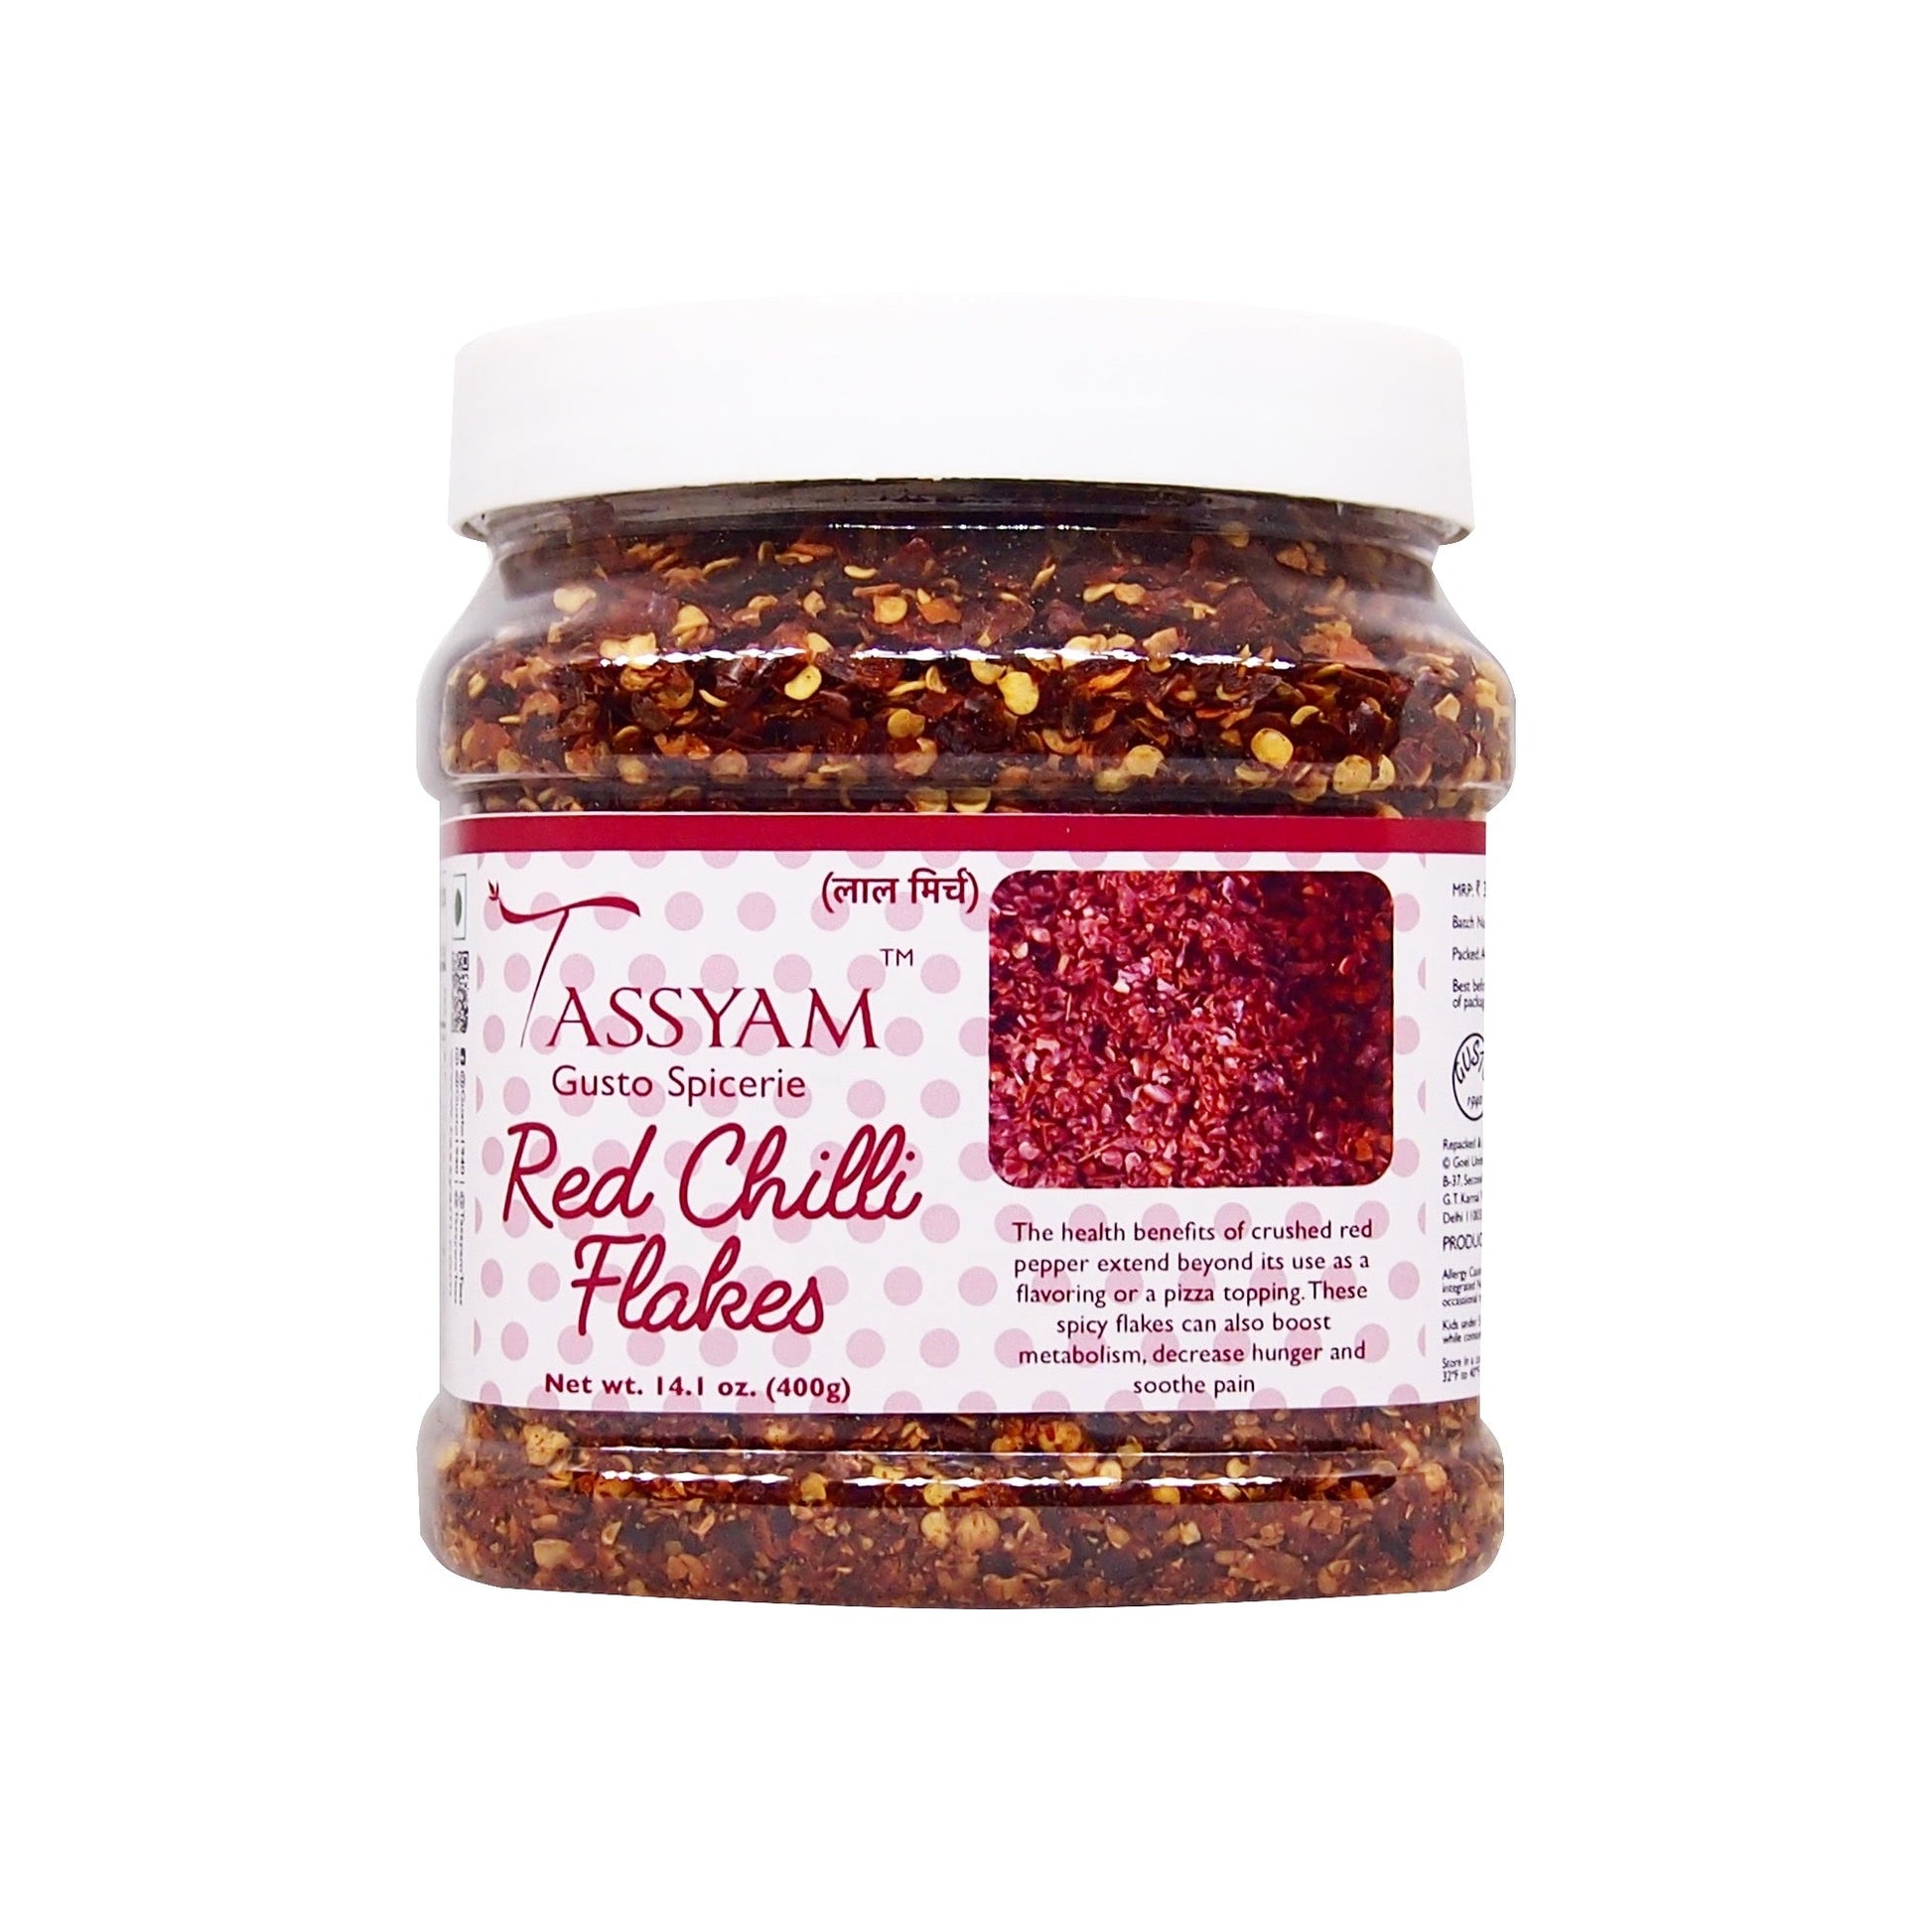 Red Chili Flakes - Tassyam Organics